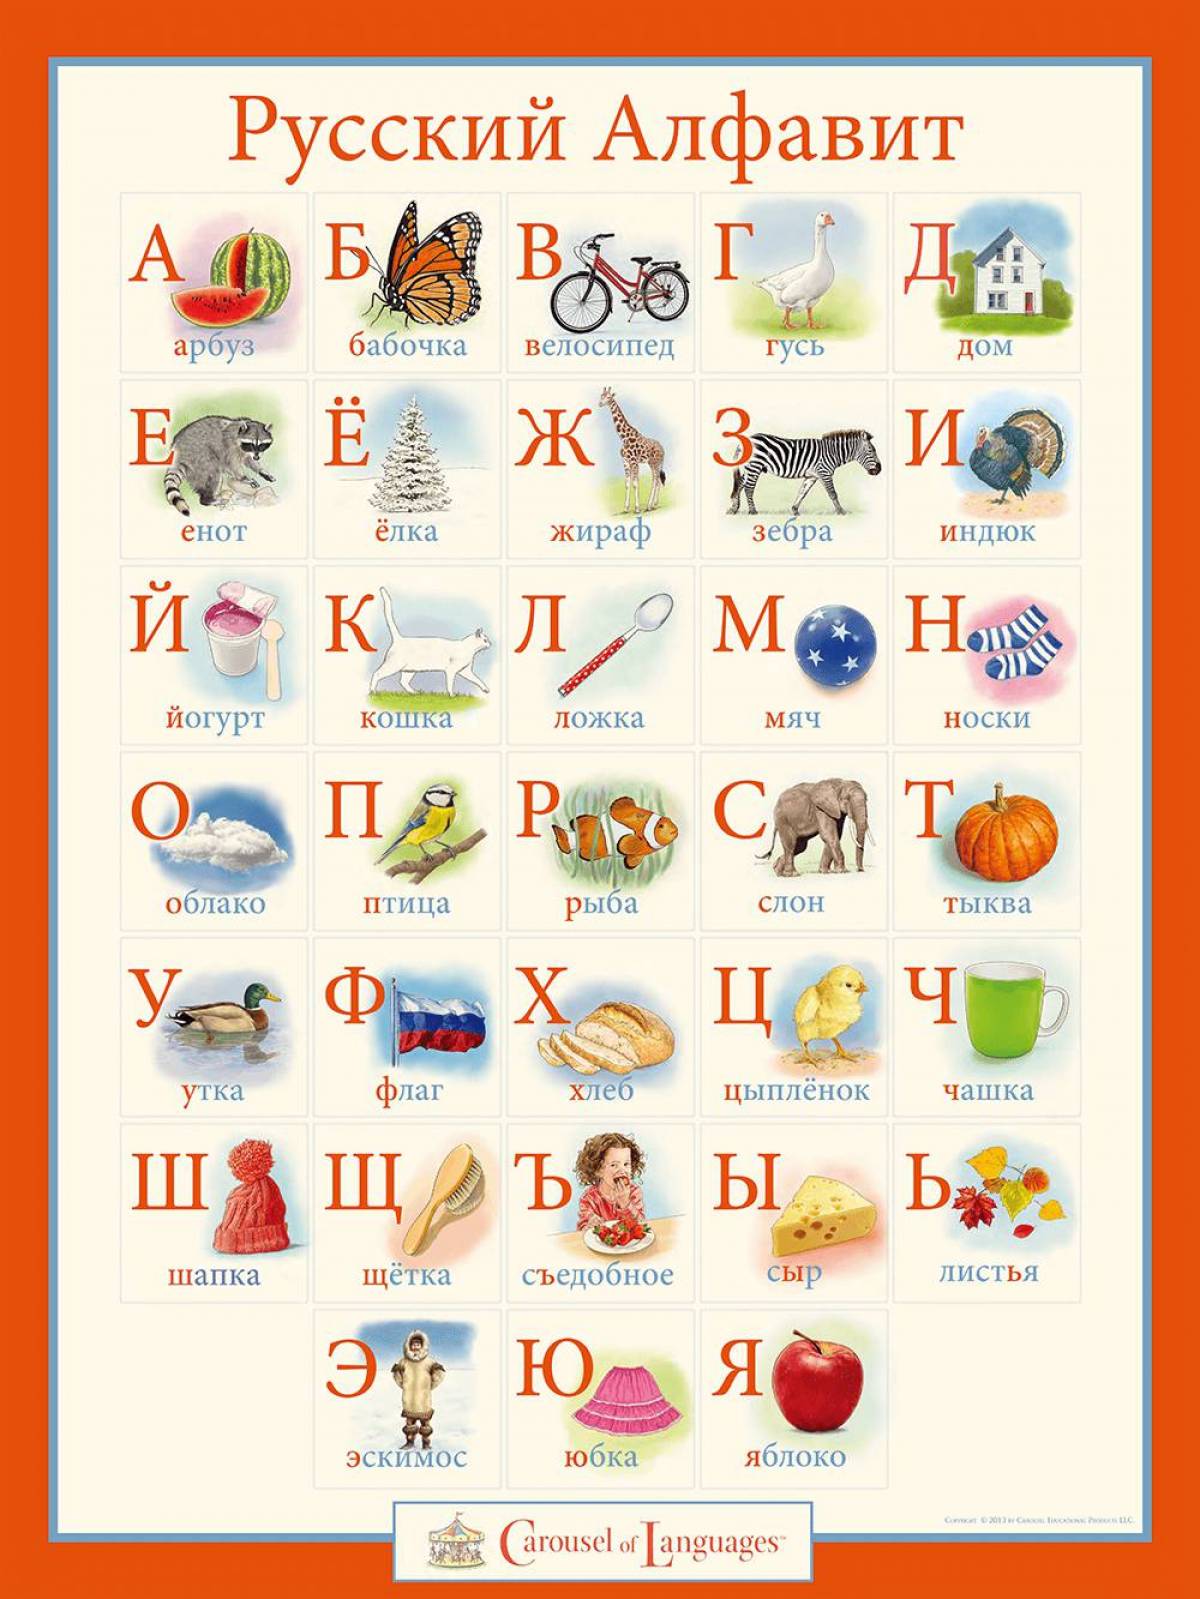 Русский алфавит лор #26